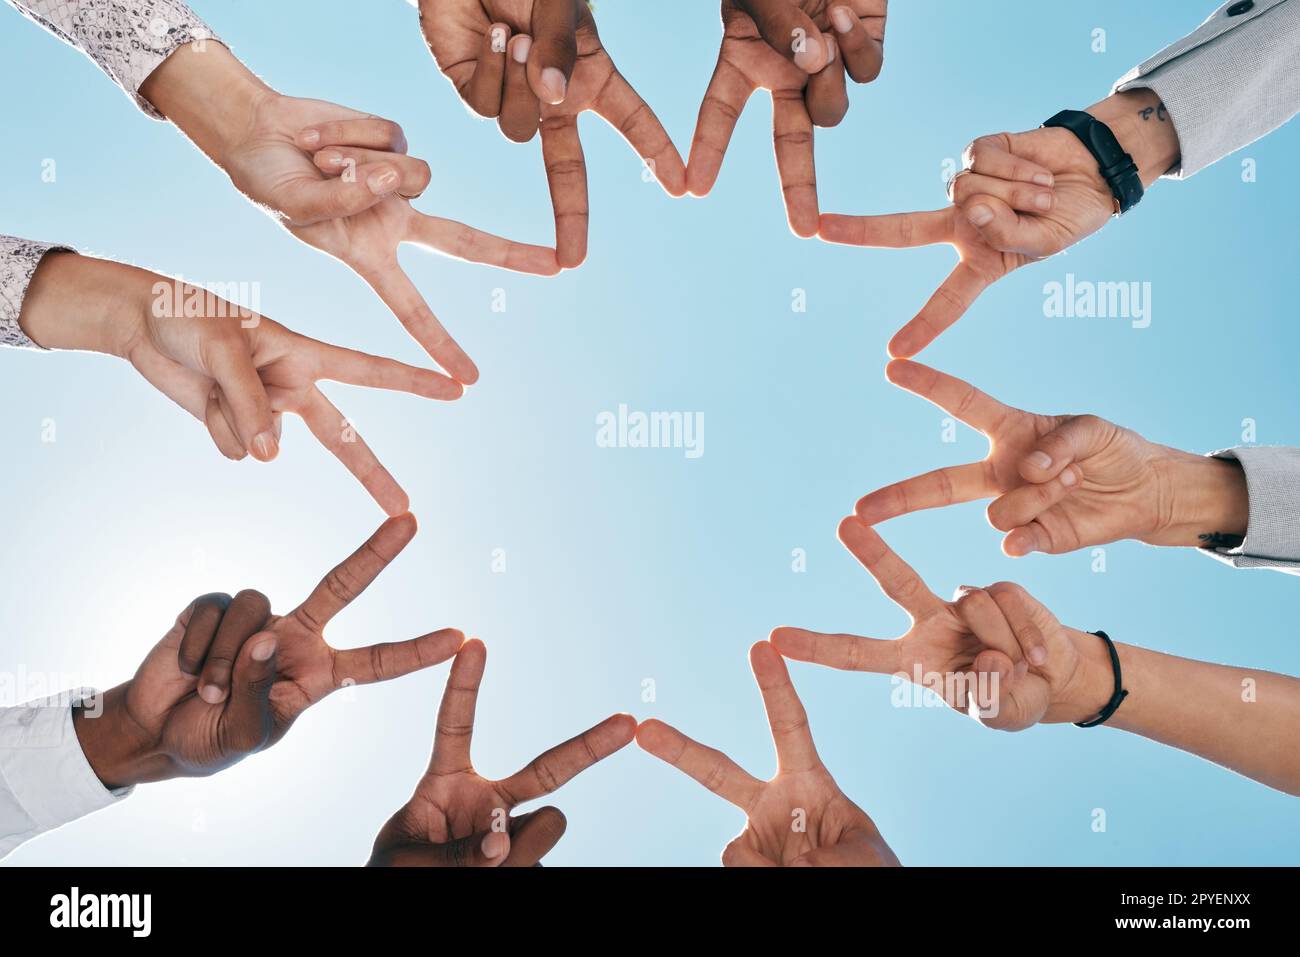 Teambildung, blauer Himmel oder Hände mit Friedenszeichen für Unterstützung, Teamarbeit oder partnerschaftliche Zusammenarbeit. Schwacher Winkel, Vertrauen oder Finger, die Hoffnung, Glauben oder Gemeindesolidarität mit den Zielen der Mission zeigen Stockfoto